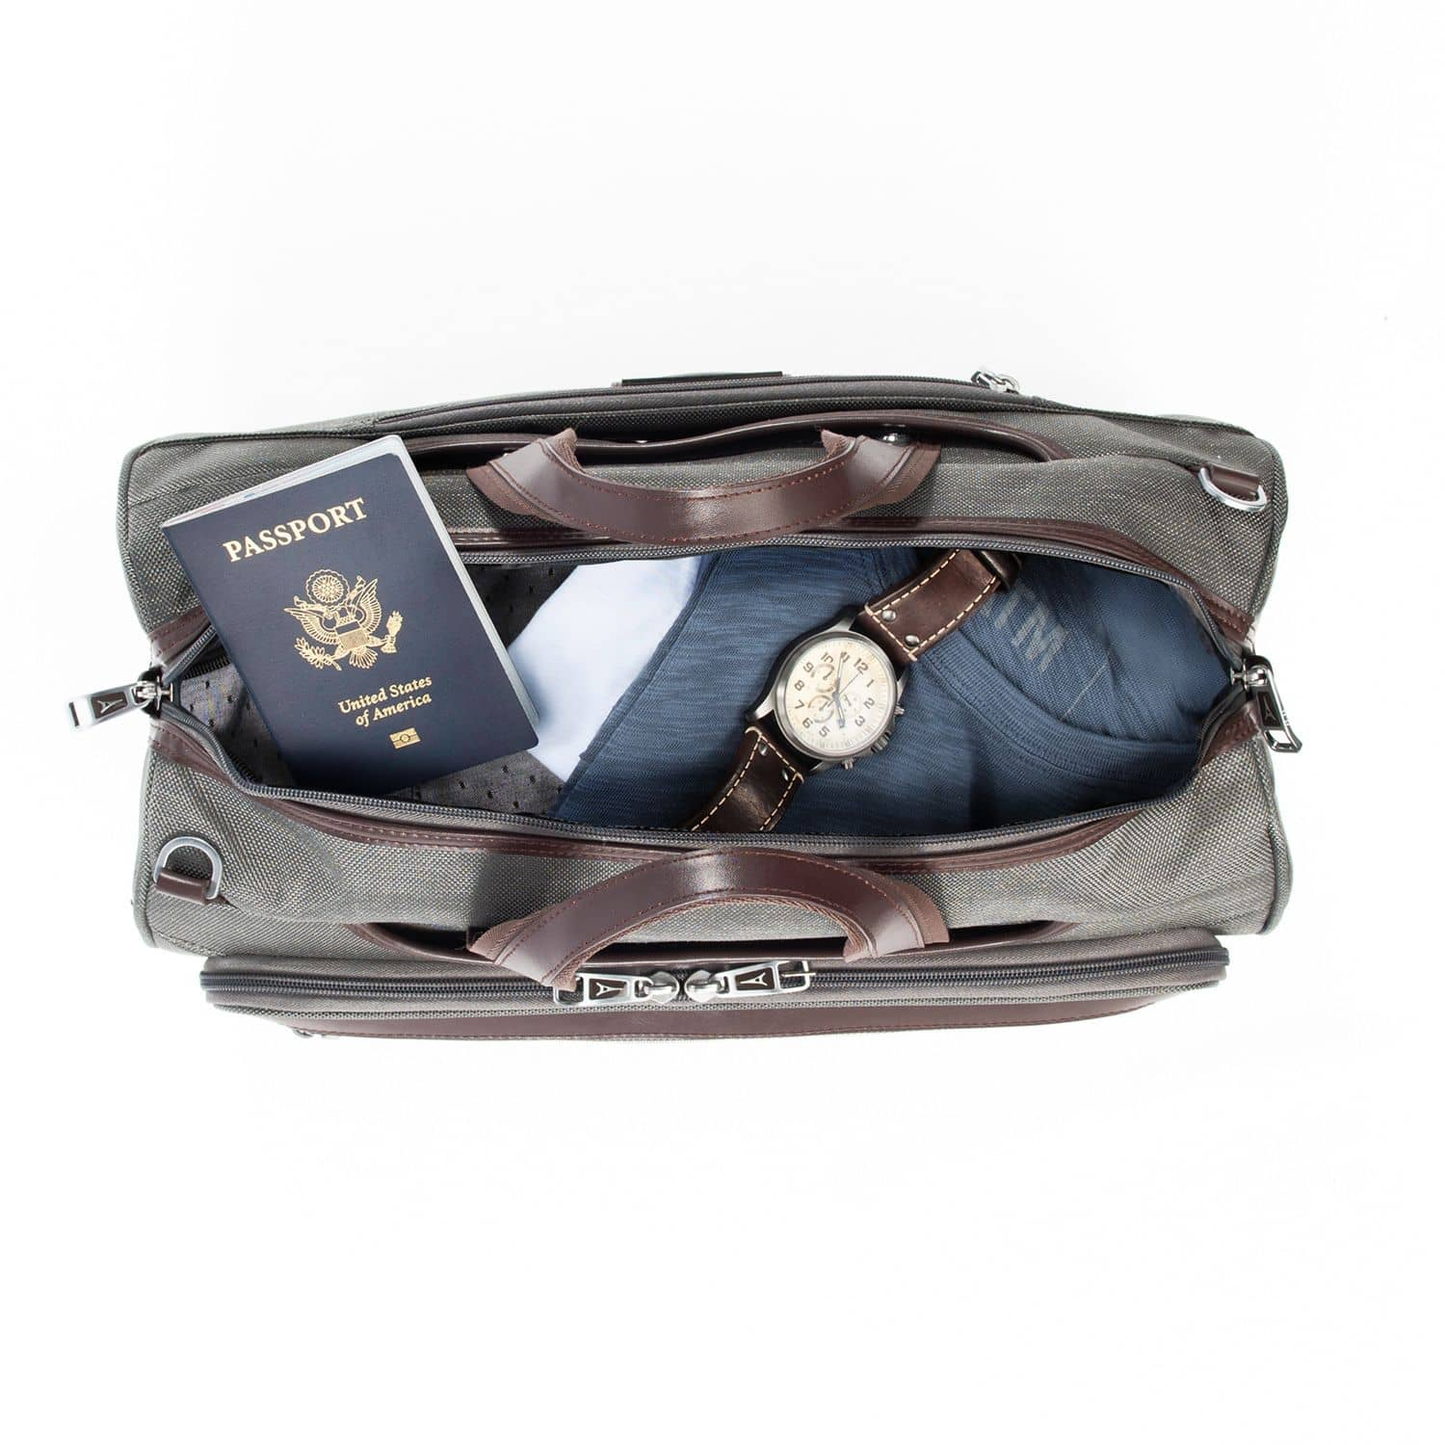 Travelpro Platinum® Elite Regional Underseat Duffel Bag